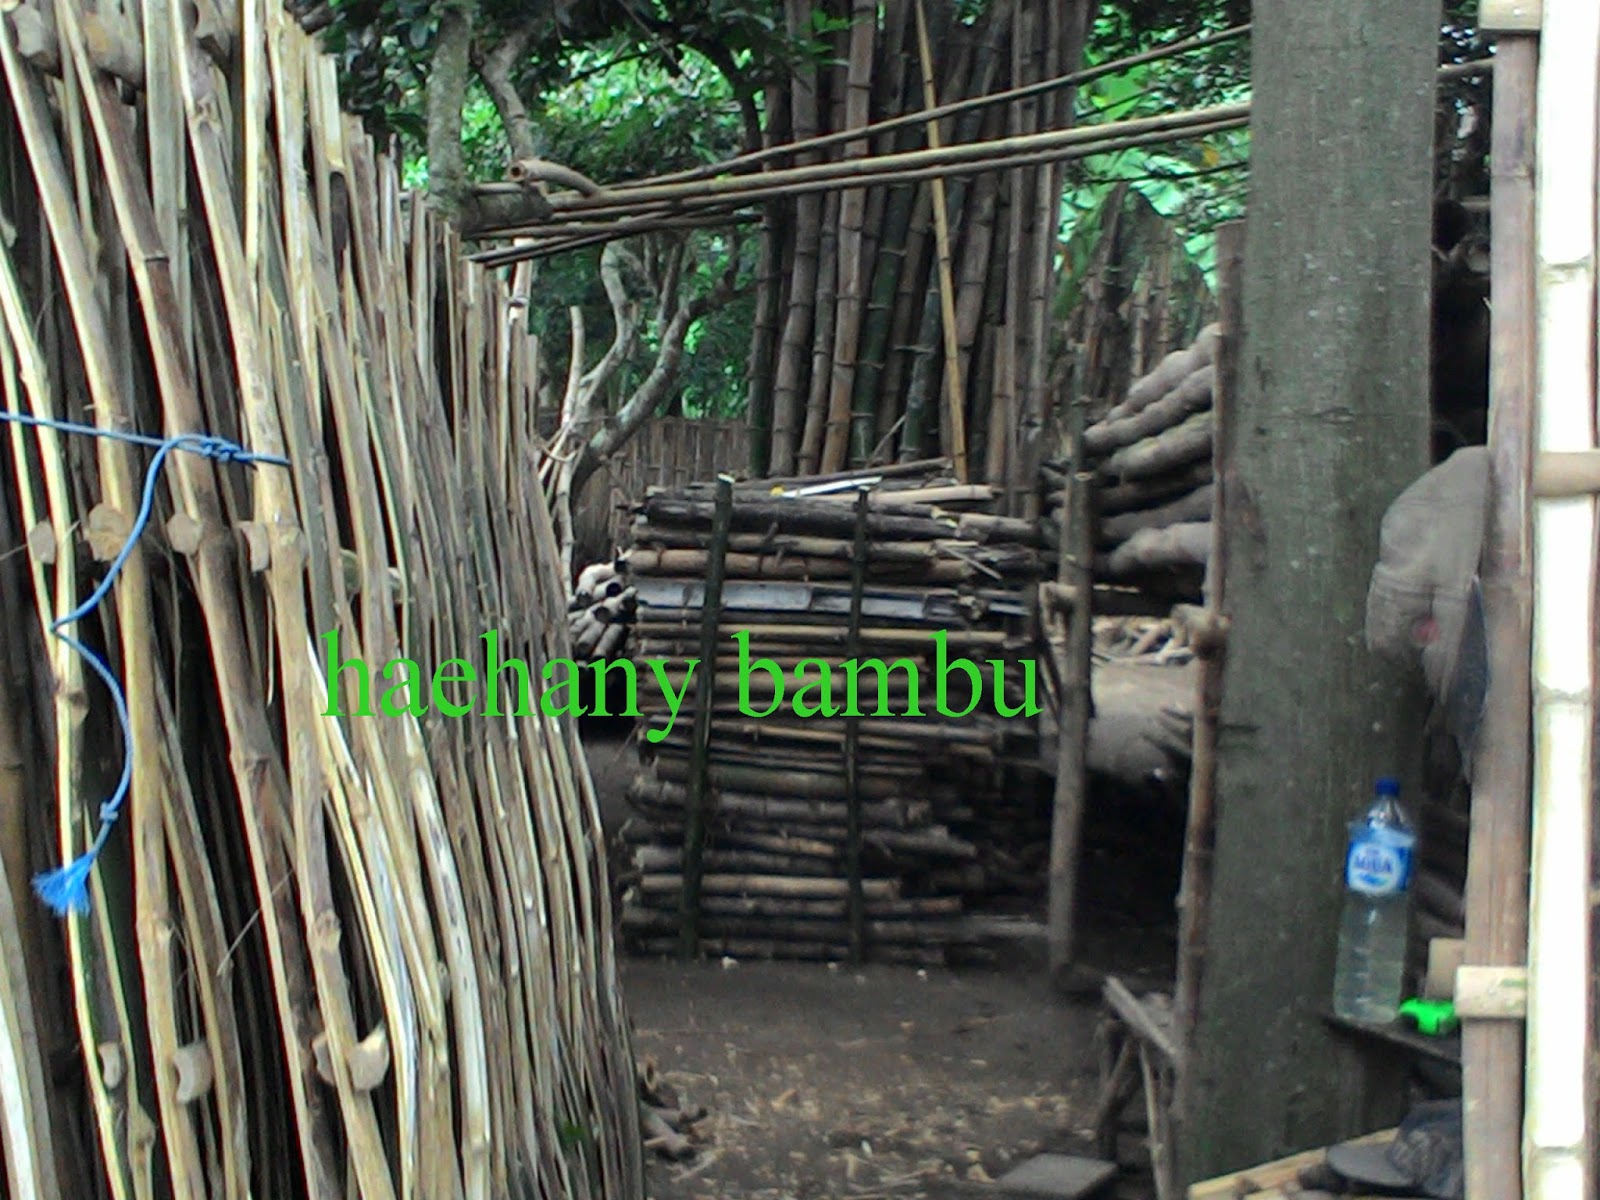 haehany jualan jual  bambu  sidoarjo